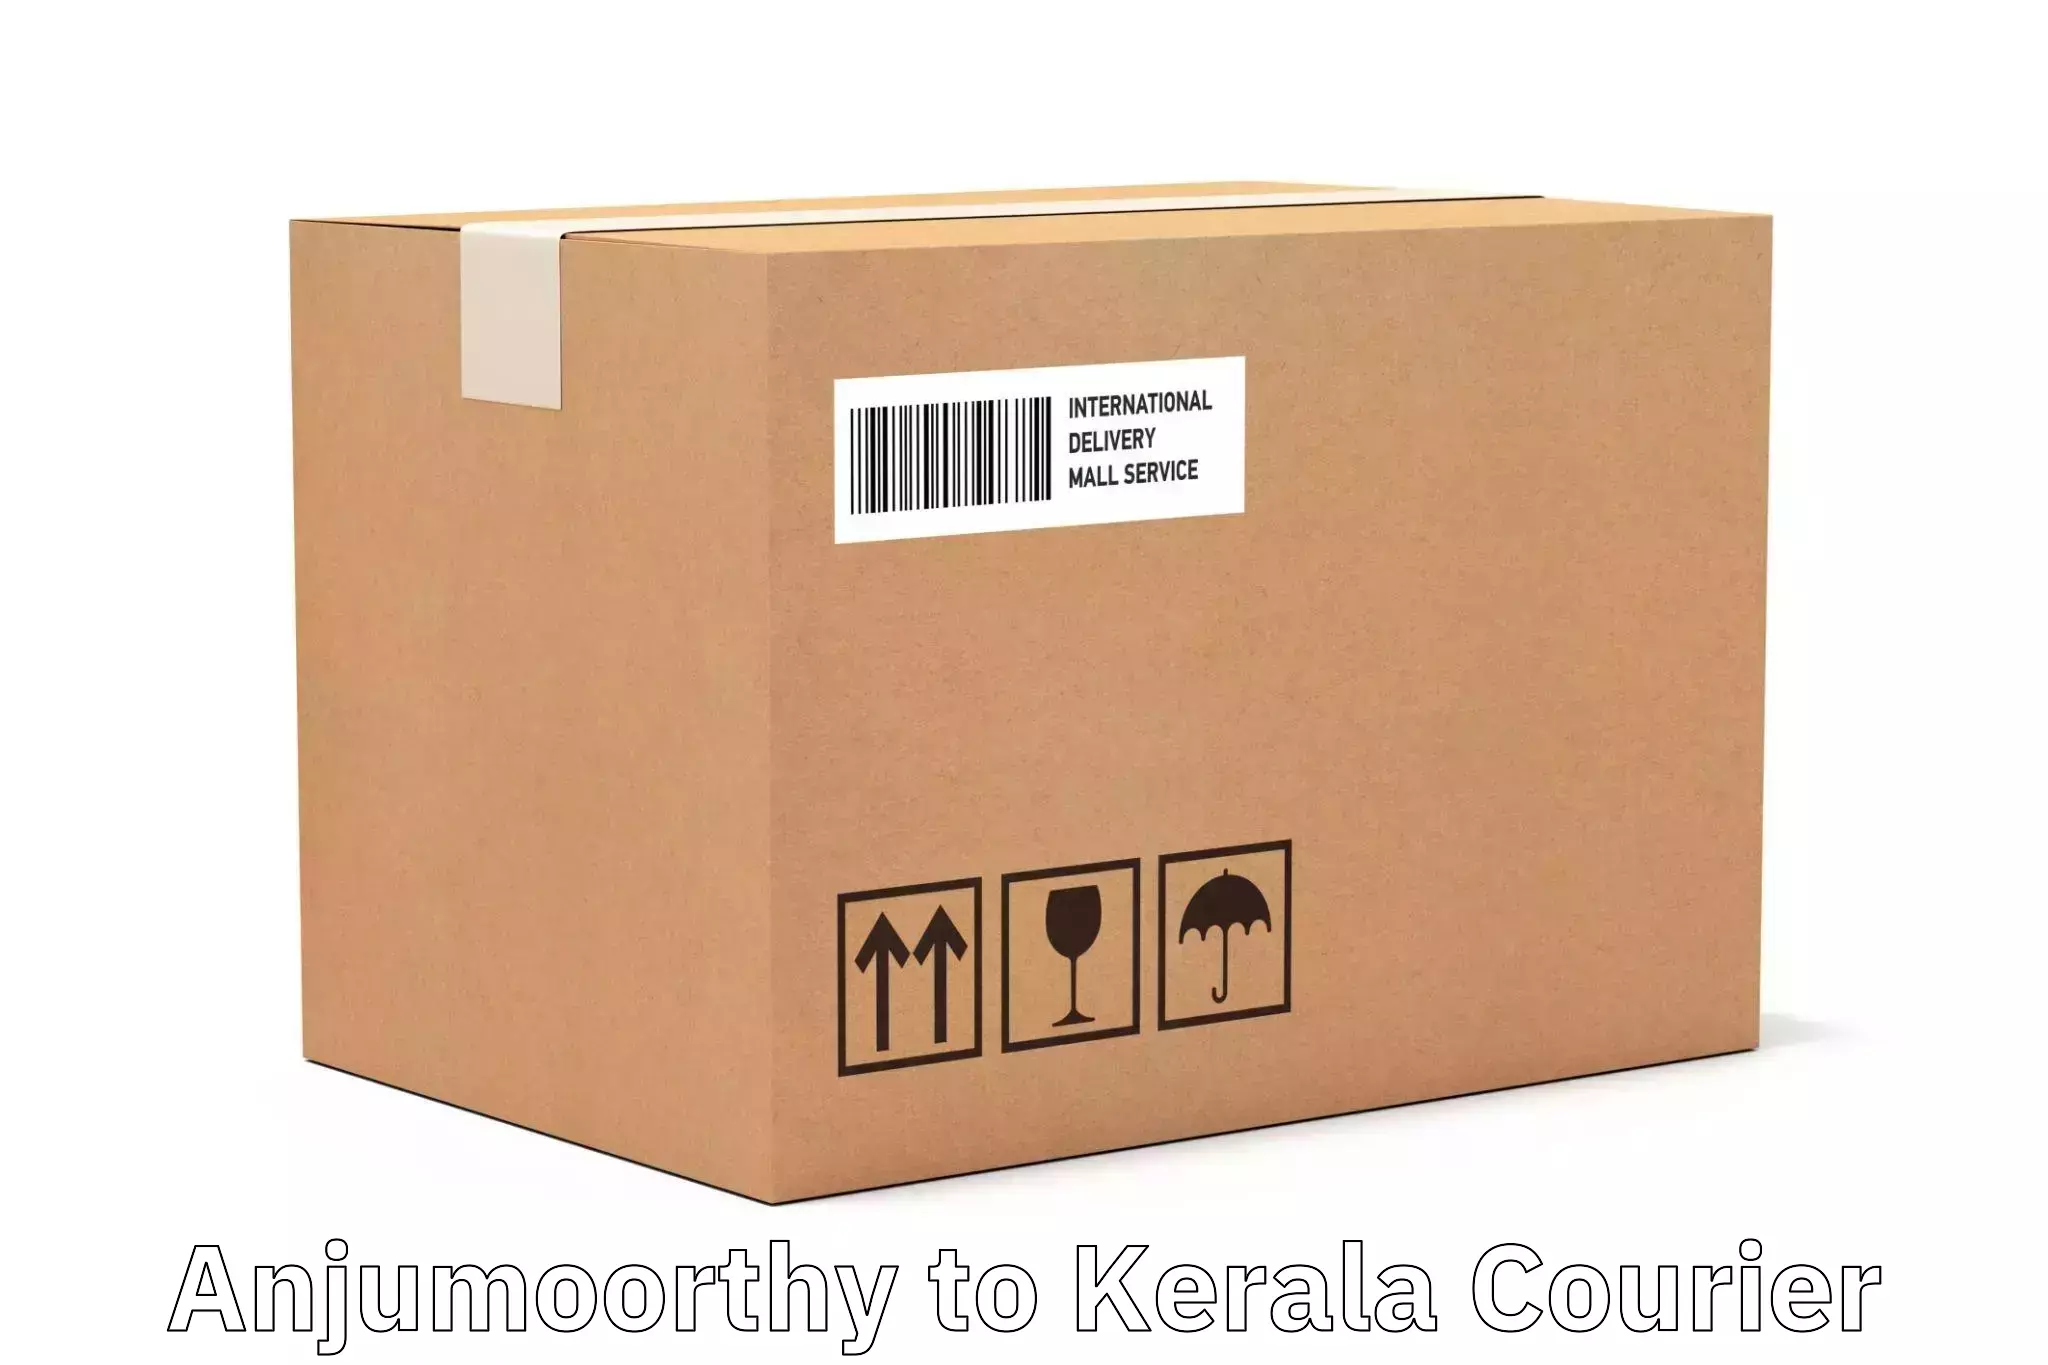 Custom courier rates in Anjumoorthy to IIIT Kottayam